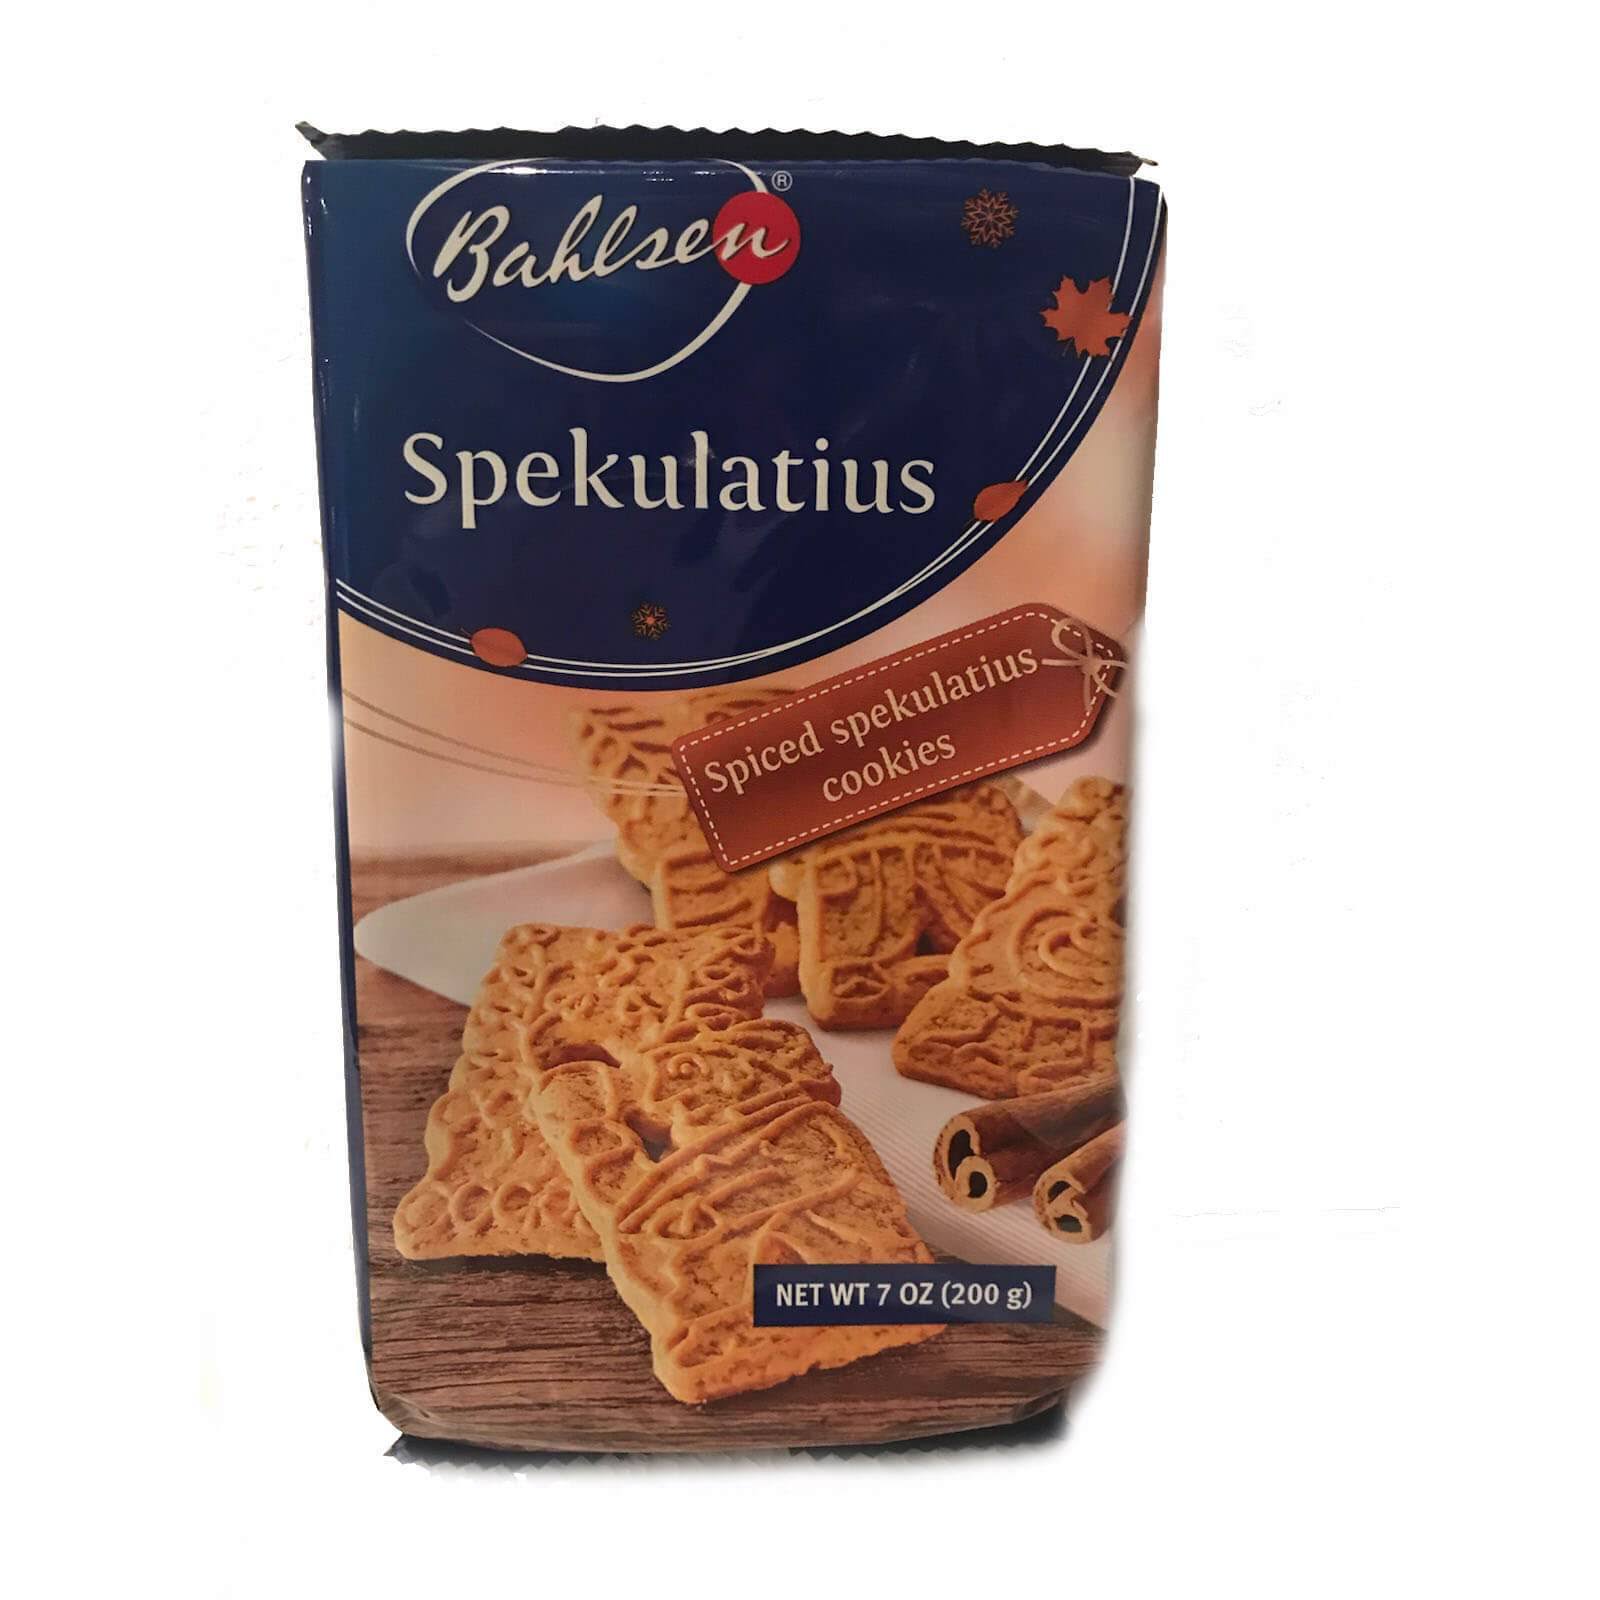 Bahlsen Spiced Spekulatius Cookie, 200g, Pack Of 2, German Import